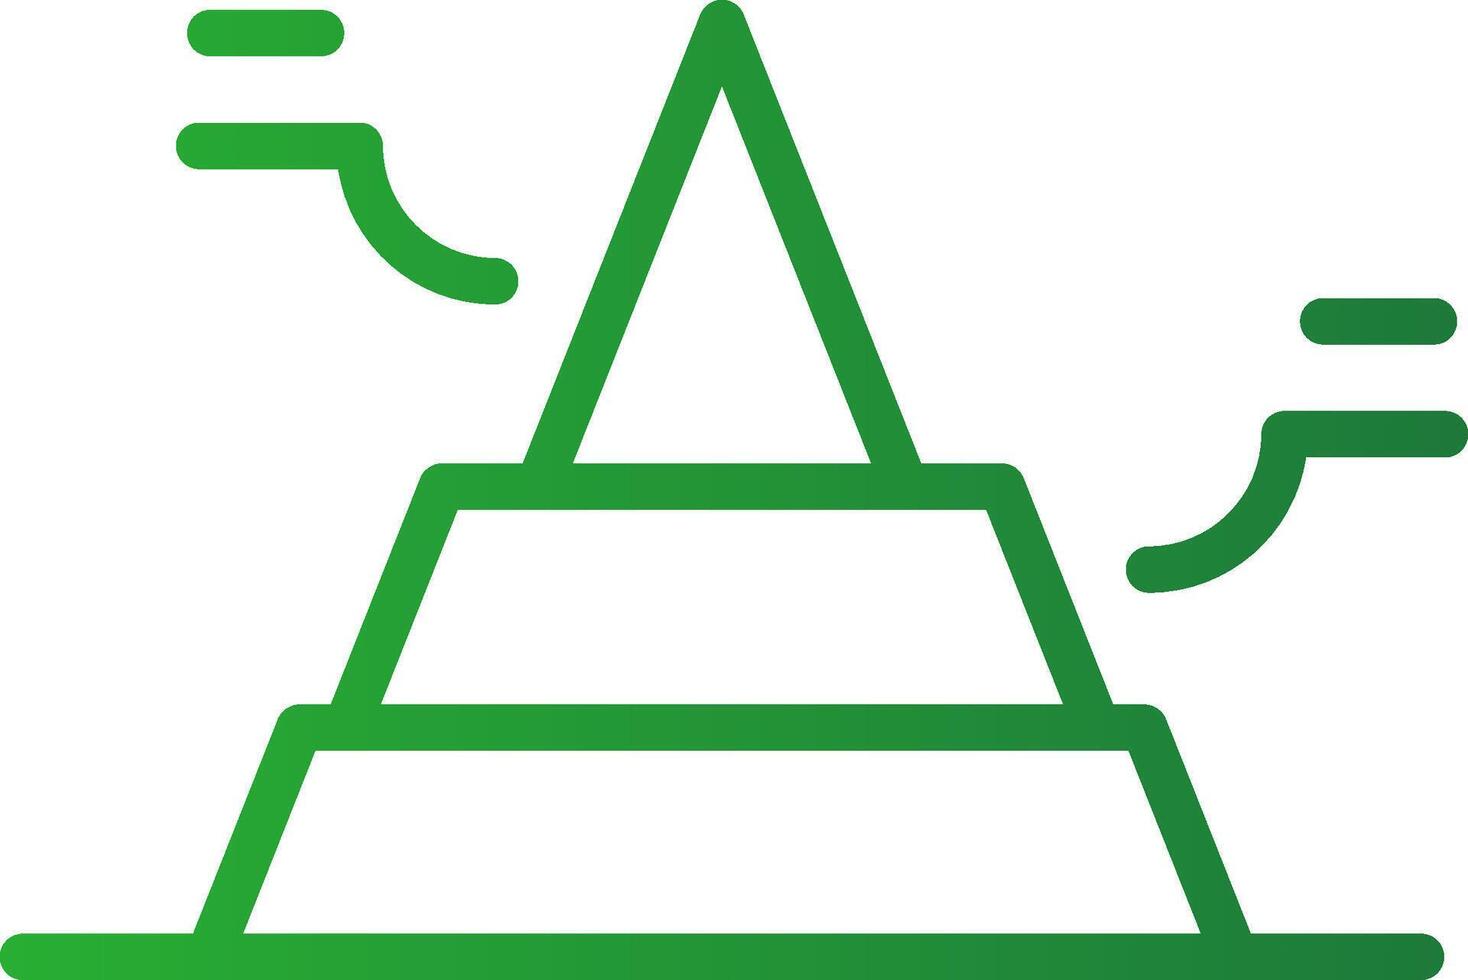 grundläggande pyramid kreativ ikon design vektor